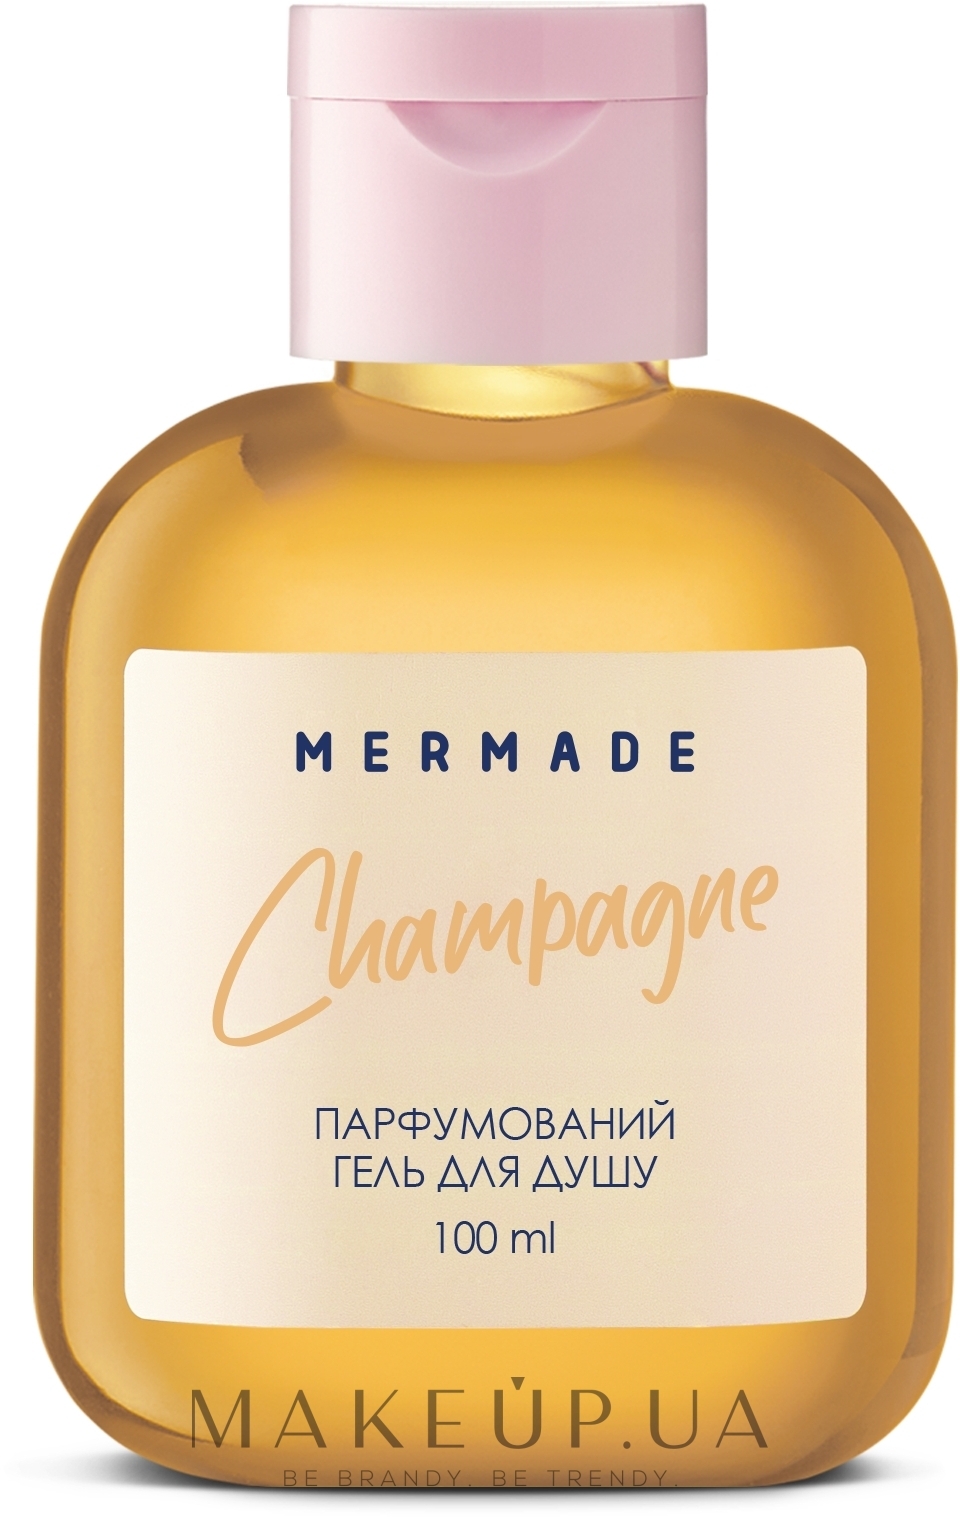 Mermade Champagne - Парфюмированный гель для душа — фото 100ml